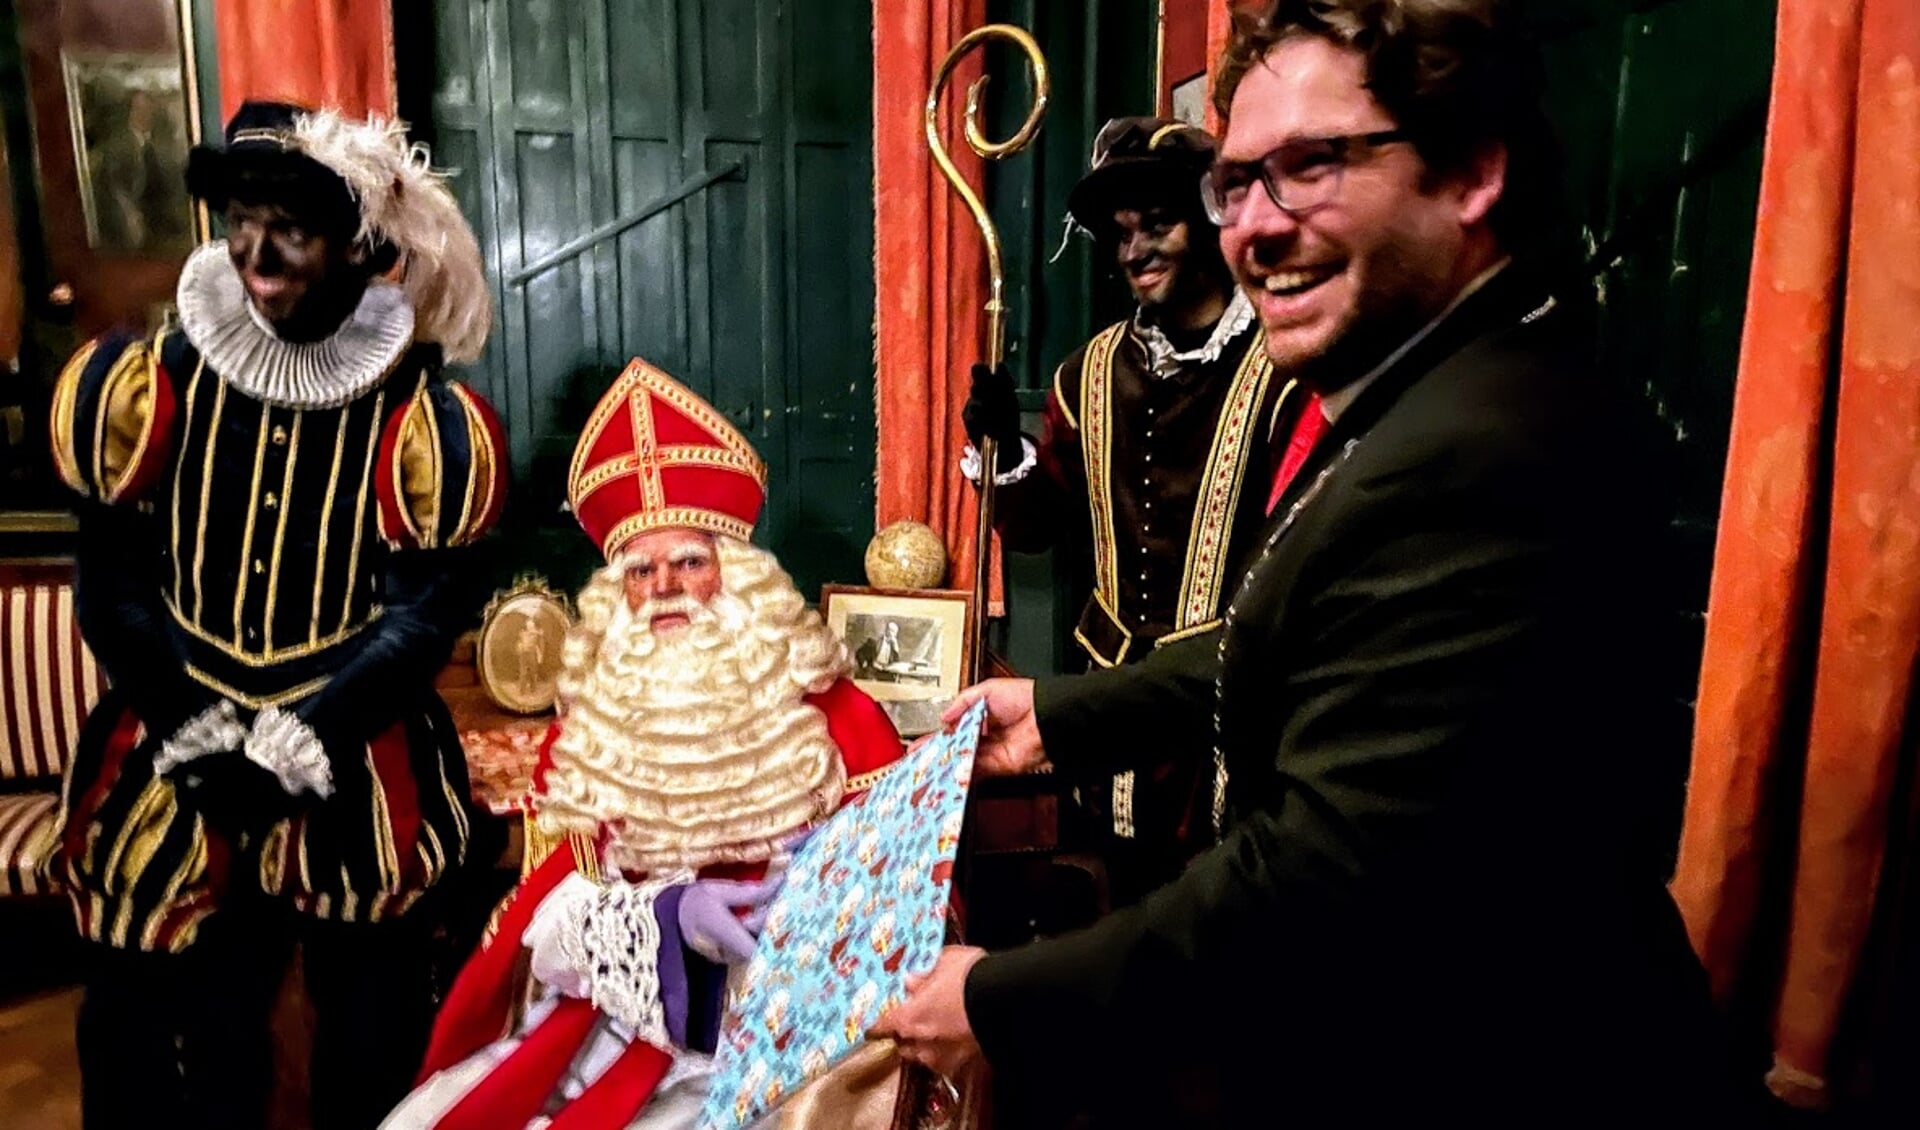 De rollen zijn even omgedraaid. Burgemeester Sebastiaan van 't Erve heeft een cadeautje voor Sinterklaas. Foto: Henri Bruntink